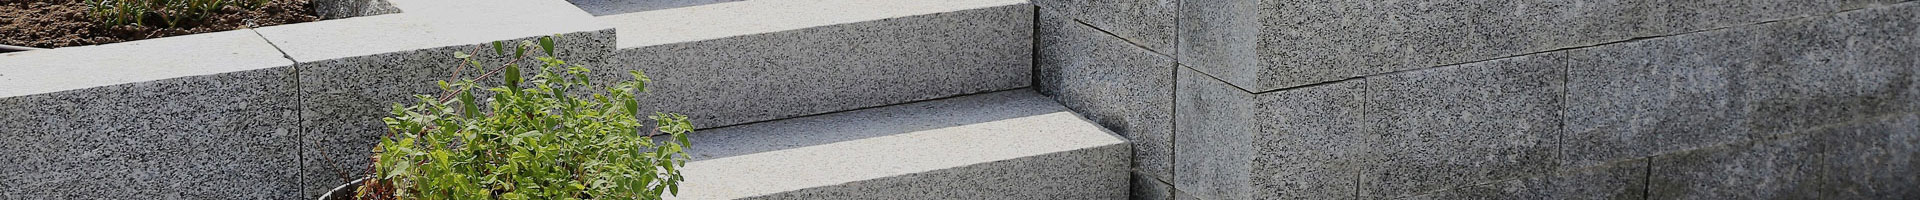 Granit Mauersteine, Granitsteine, Gartensteine, Lagerfugen gesägt 25x25x50 cm